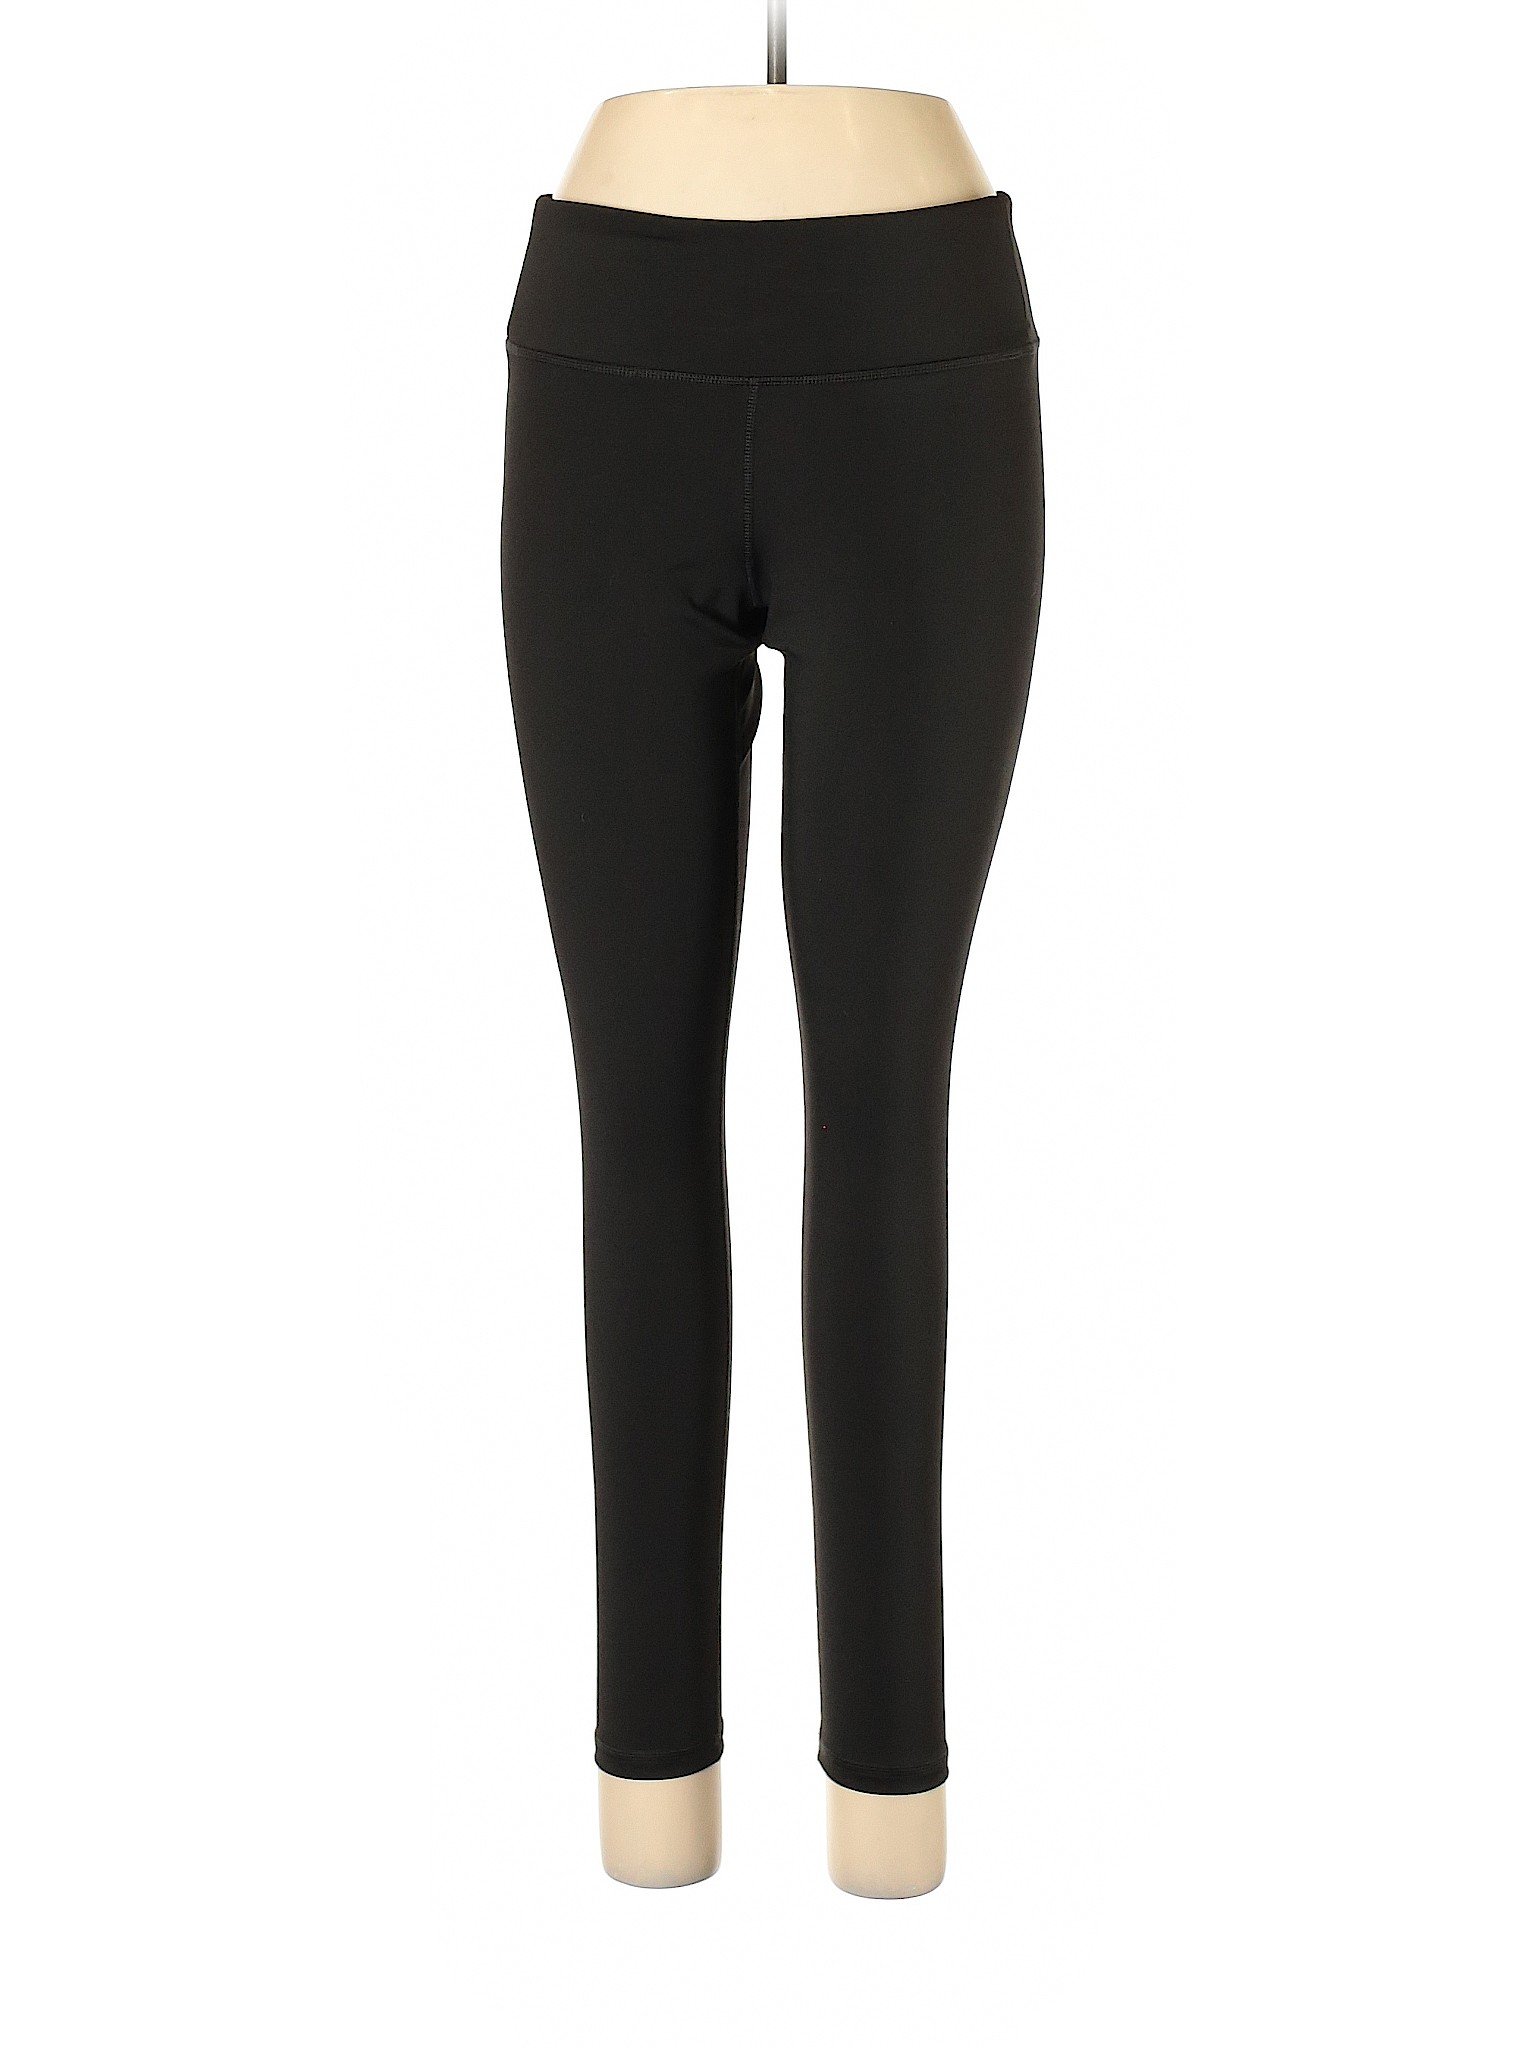 Copper Fit Women Black Active Pants M | eBay